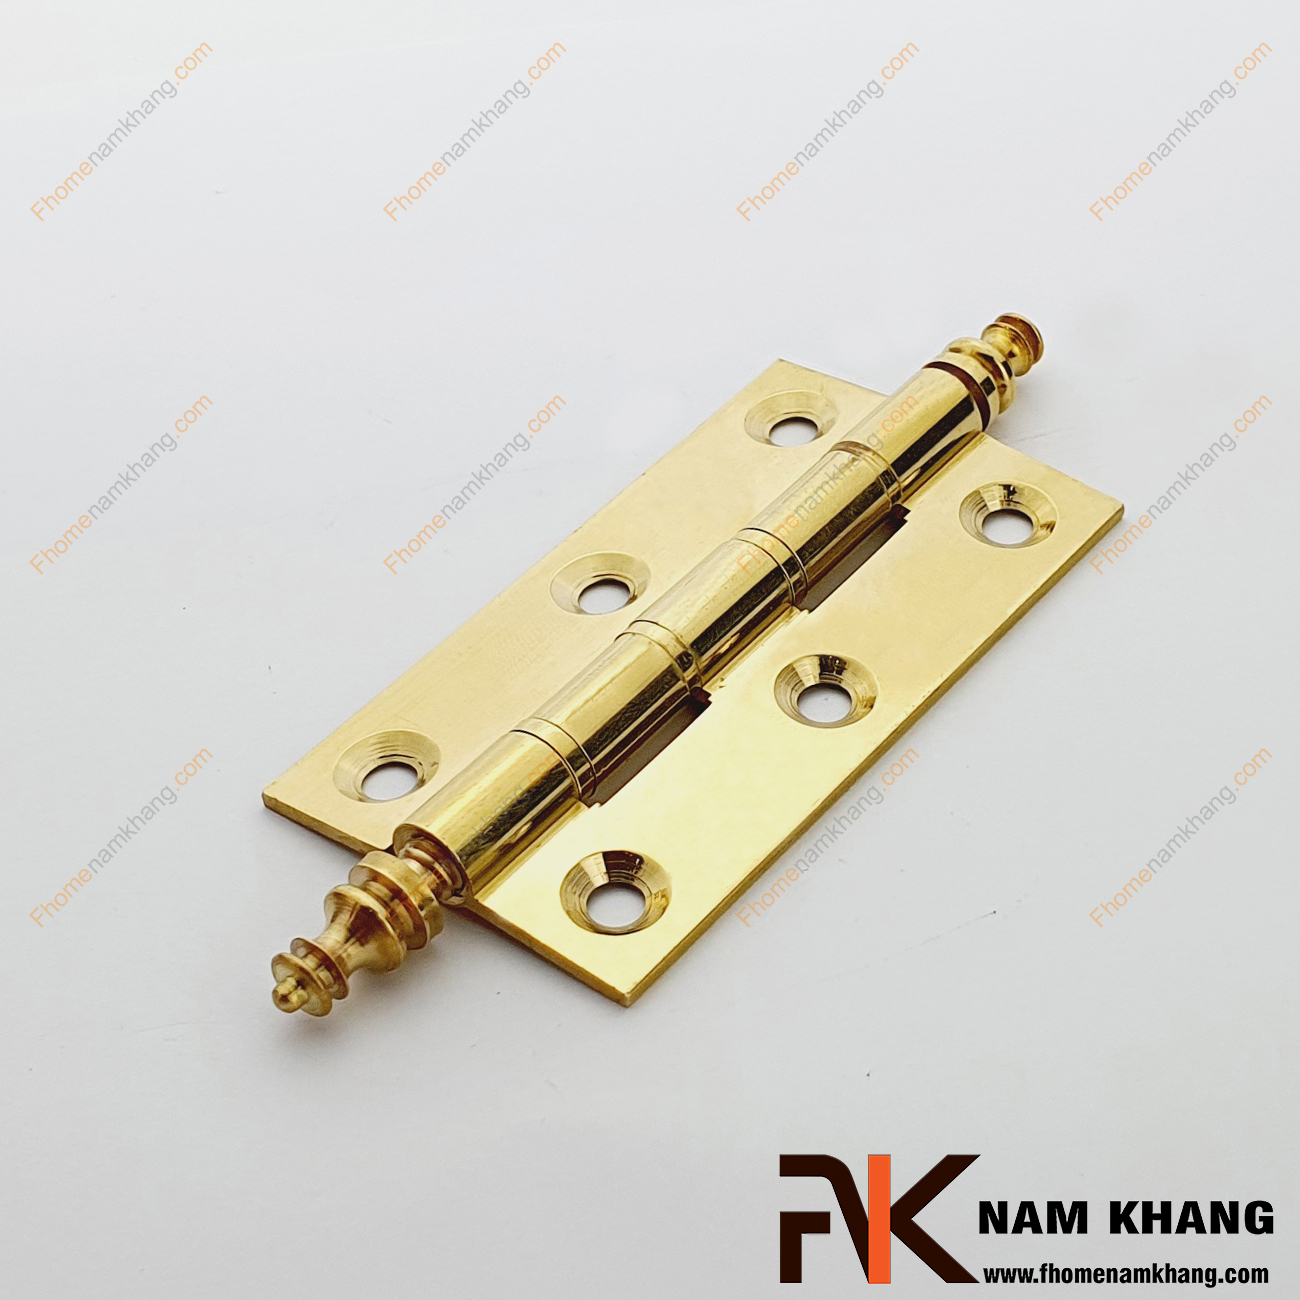 Bản lề lá tủ bằng đồng cao cấp NK471D-8FDO được sản xuất từ chất liệu đồng cao cấp, sử dụng công nghệ điện hóa cho màu đồng vàng cao cấp.